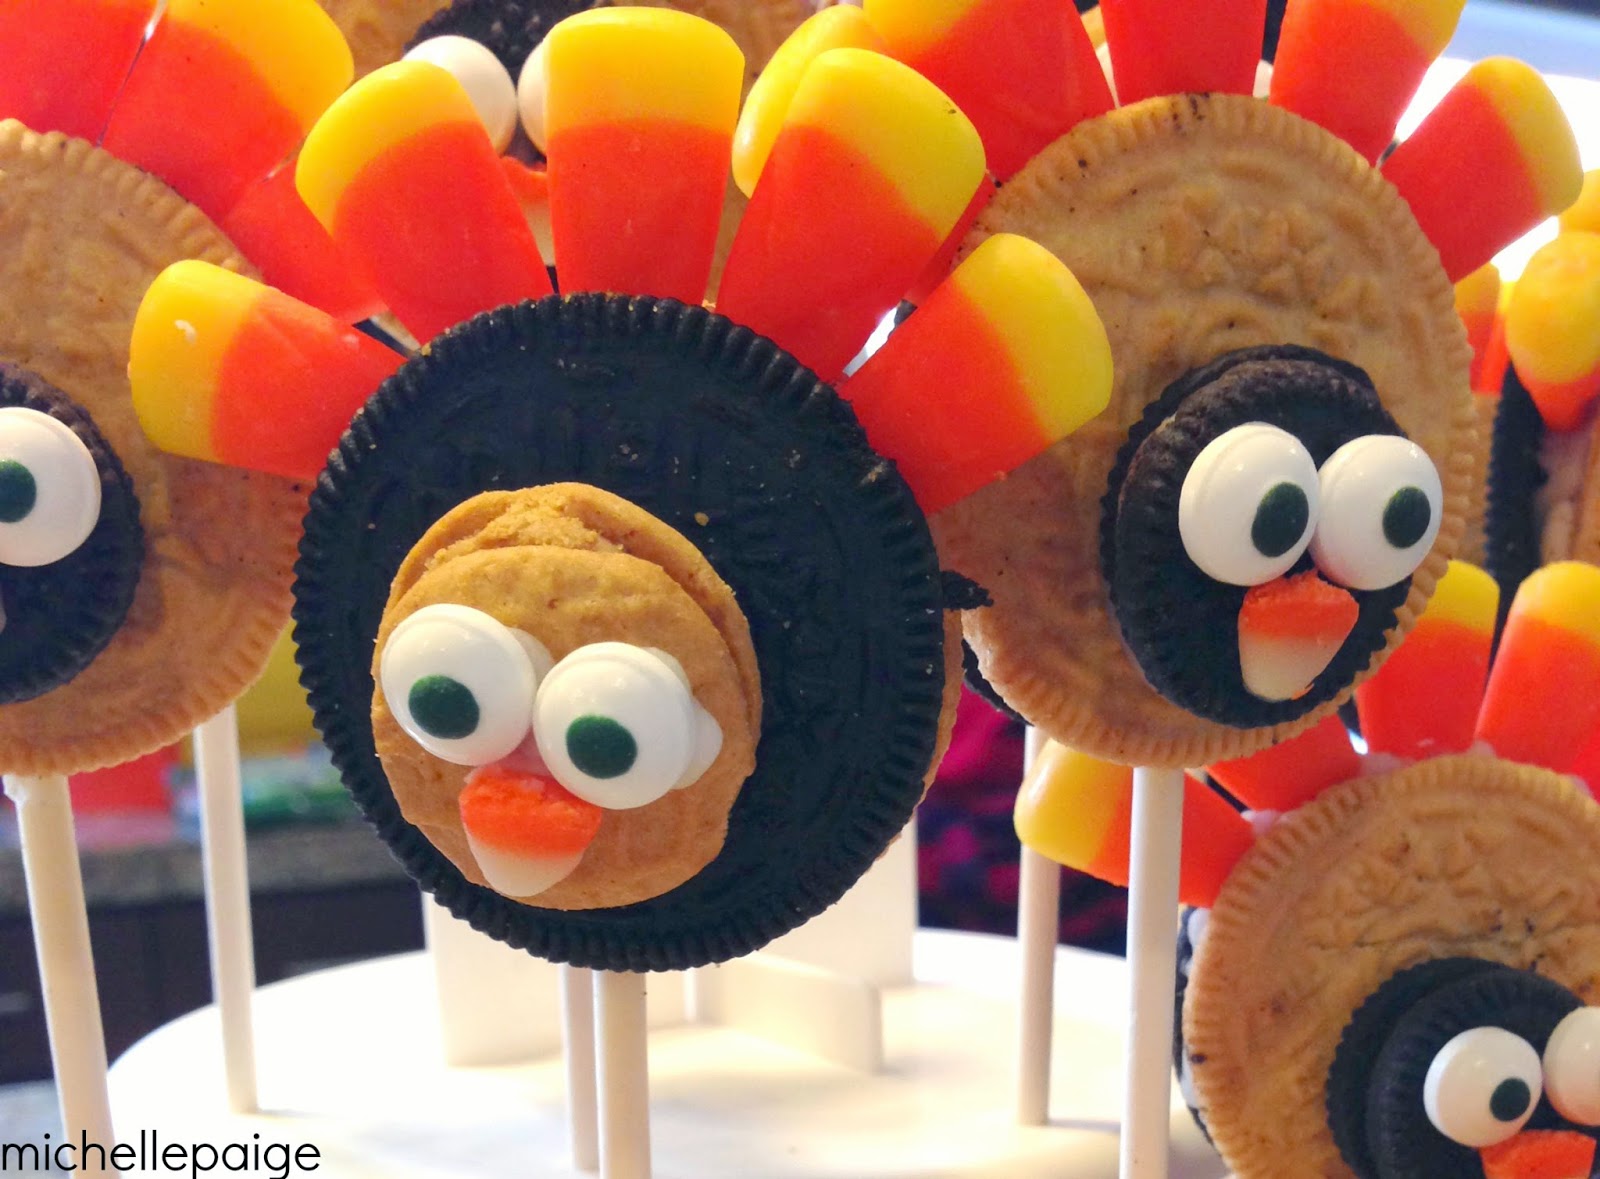 michelle paige blogs: Turkey Cookie Pops